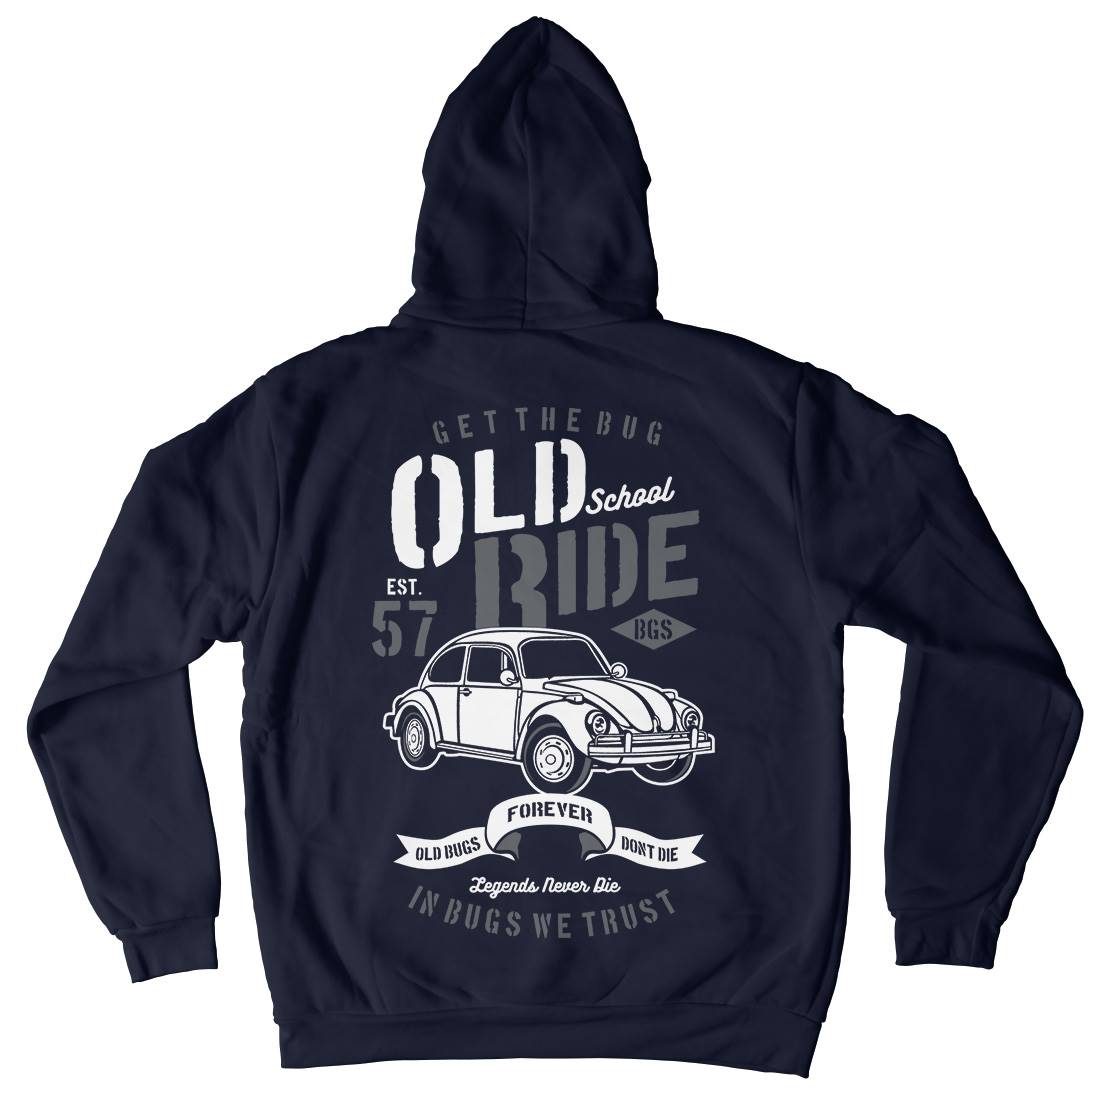 Old School Ride Kids Crew Neck Hoodie Cars B239